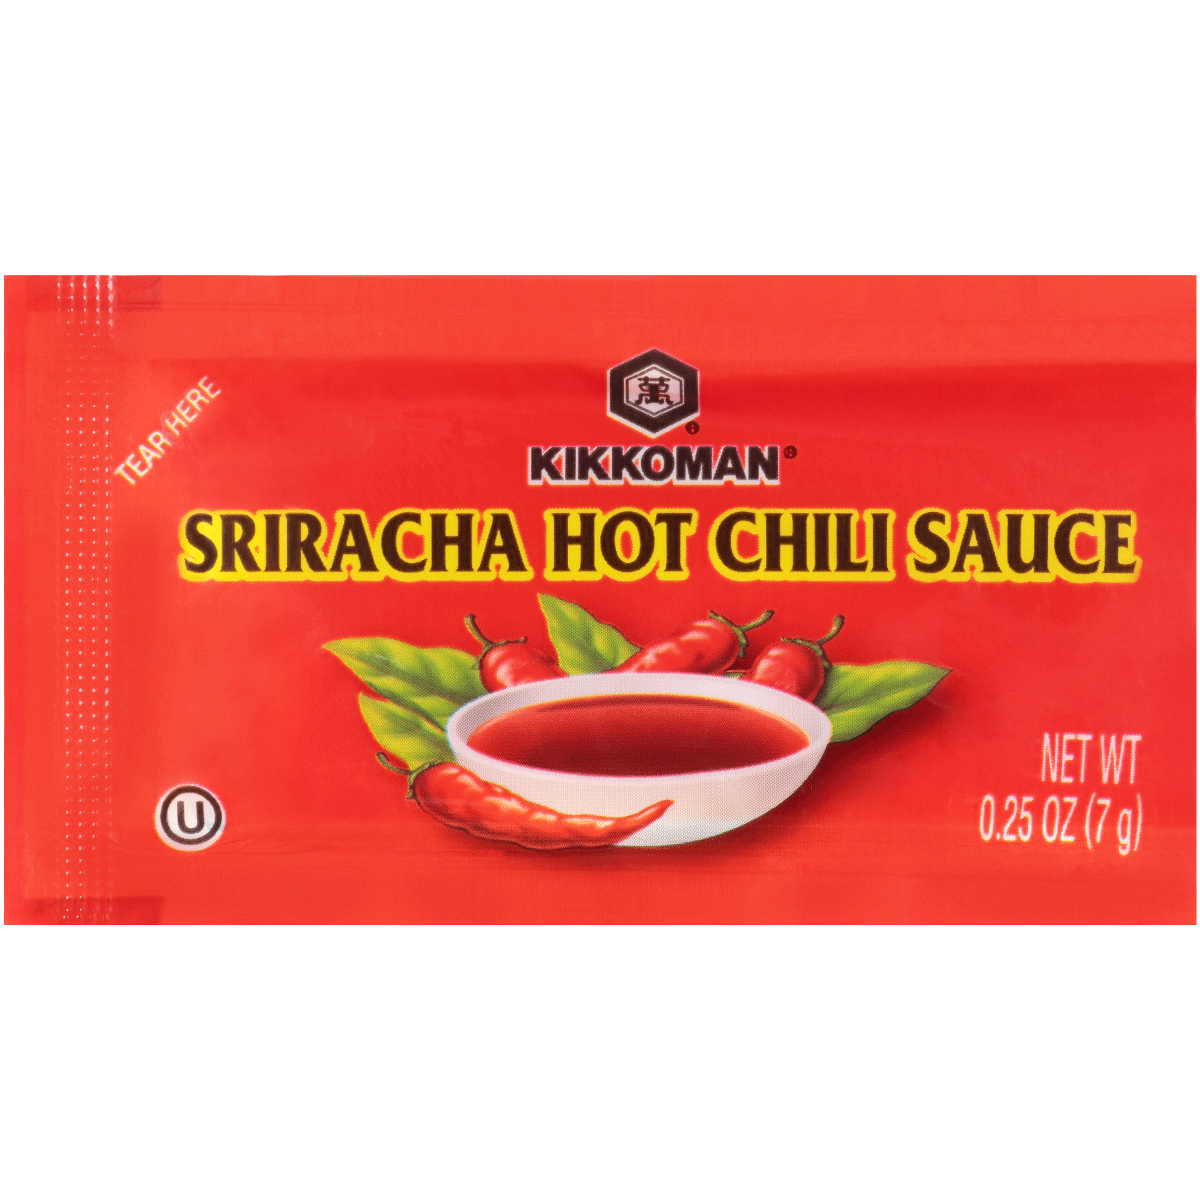 0.25 OZ Sriracha Hot Chili Sauce - Plastic packets